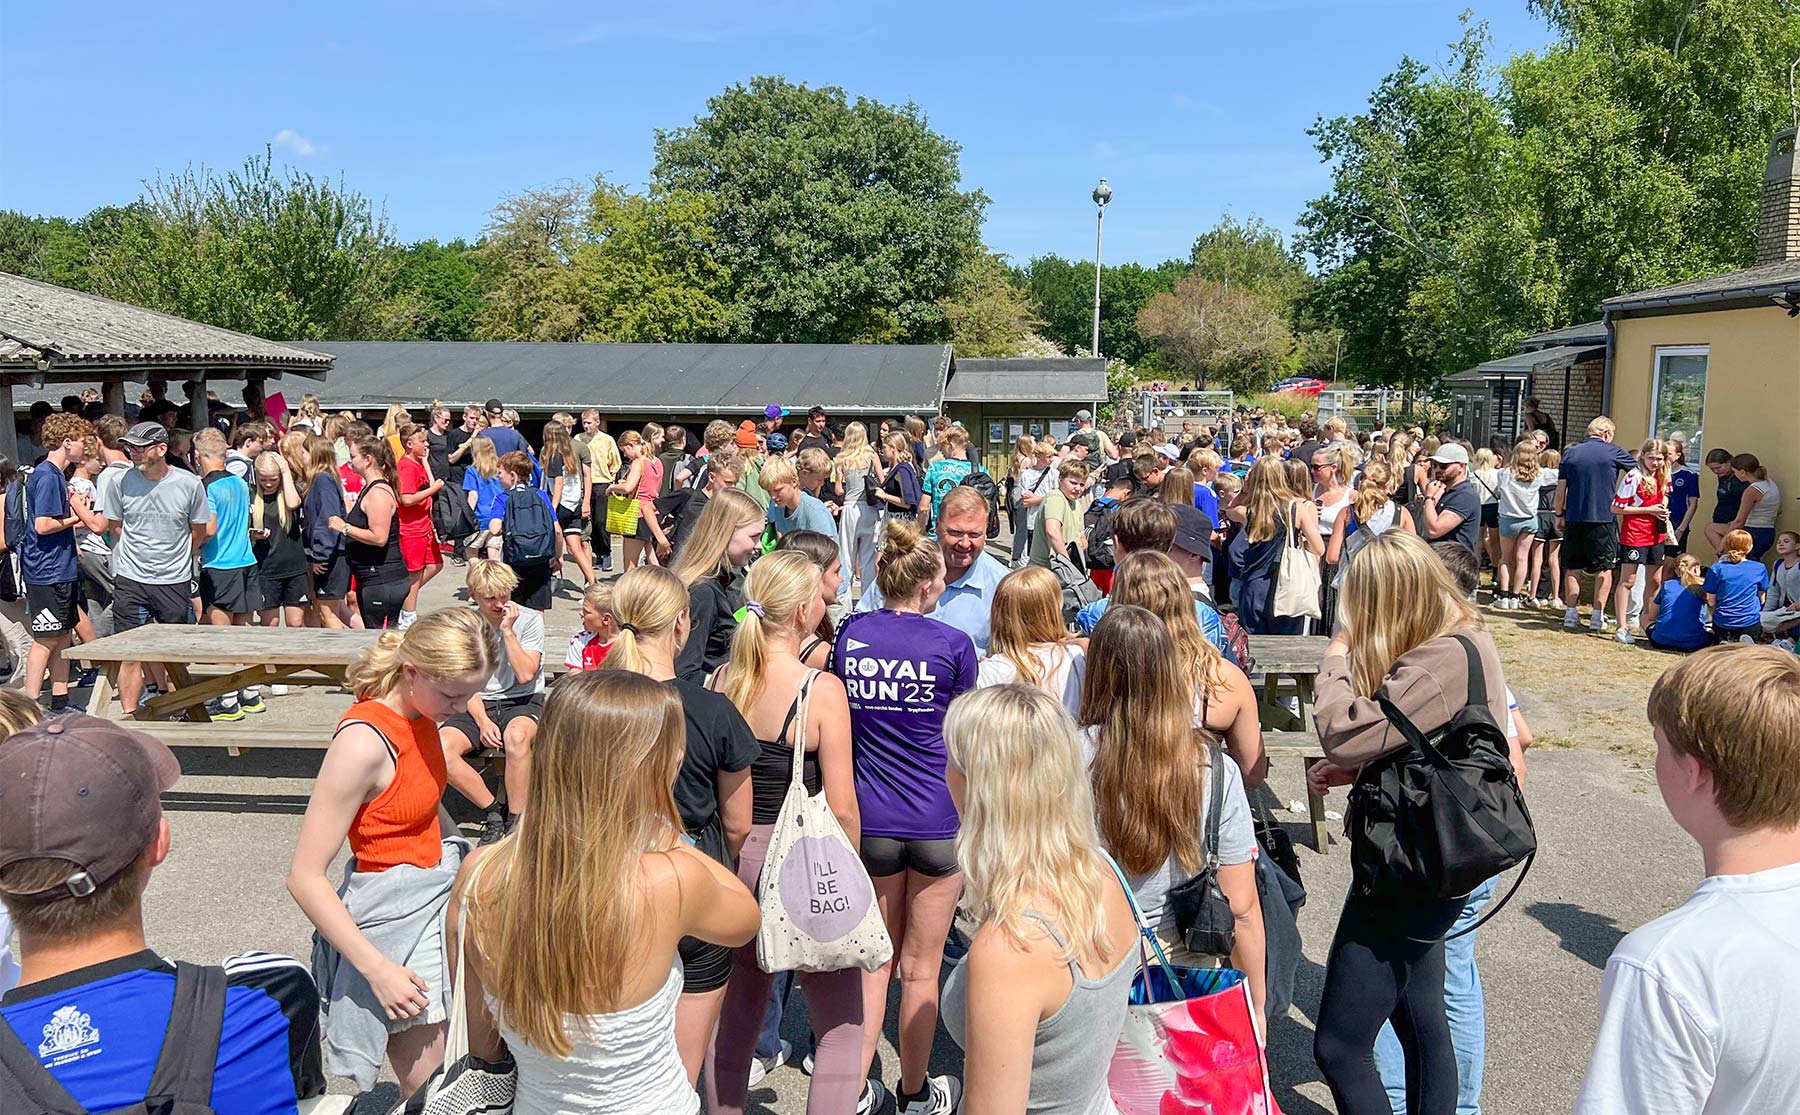 Borgmester Kenneth Gøtterup taler med nogle af eleverne på Kongelundsfortet. Foto: Dragør Ungdomsskole.